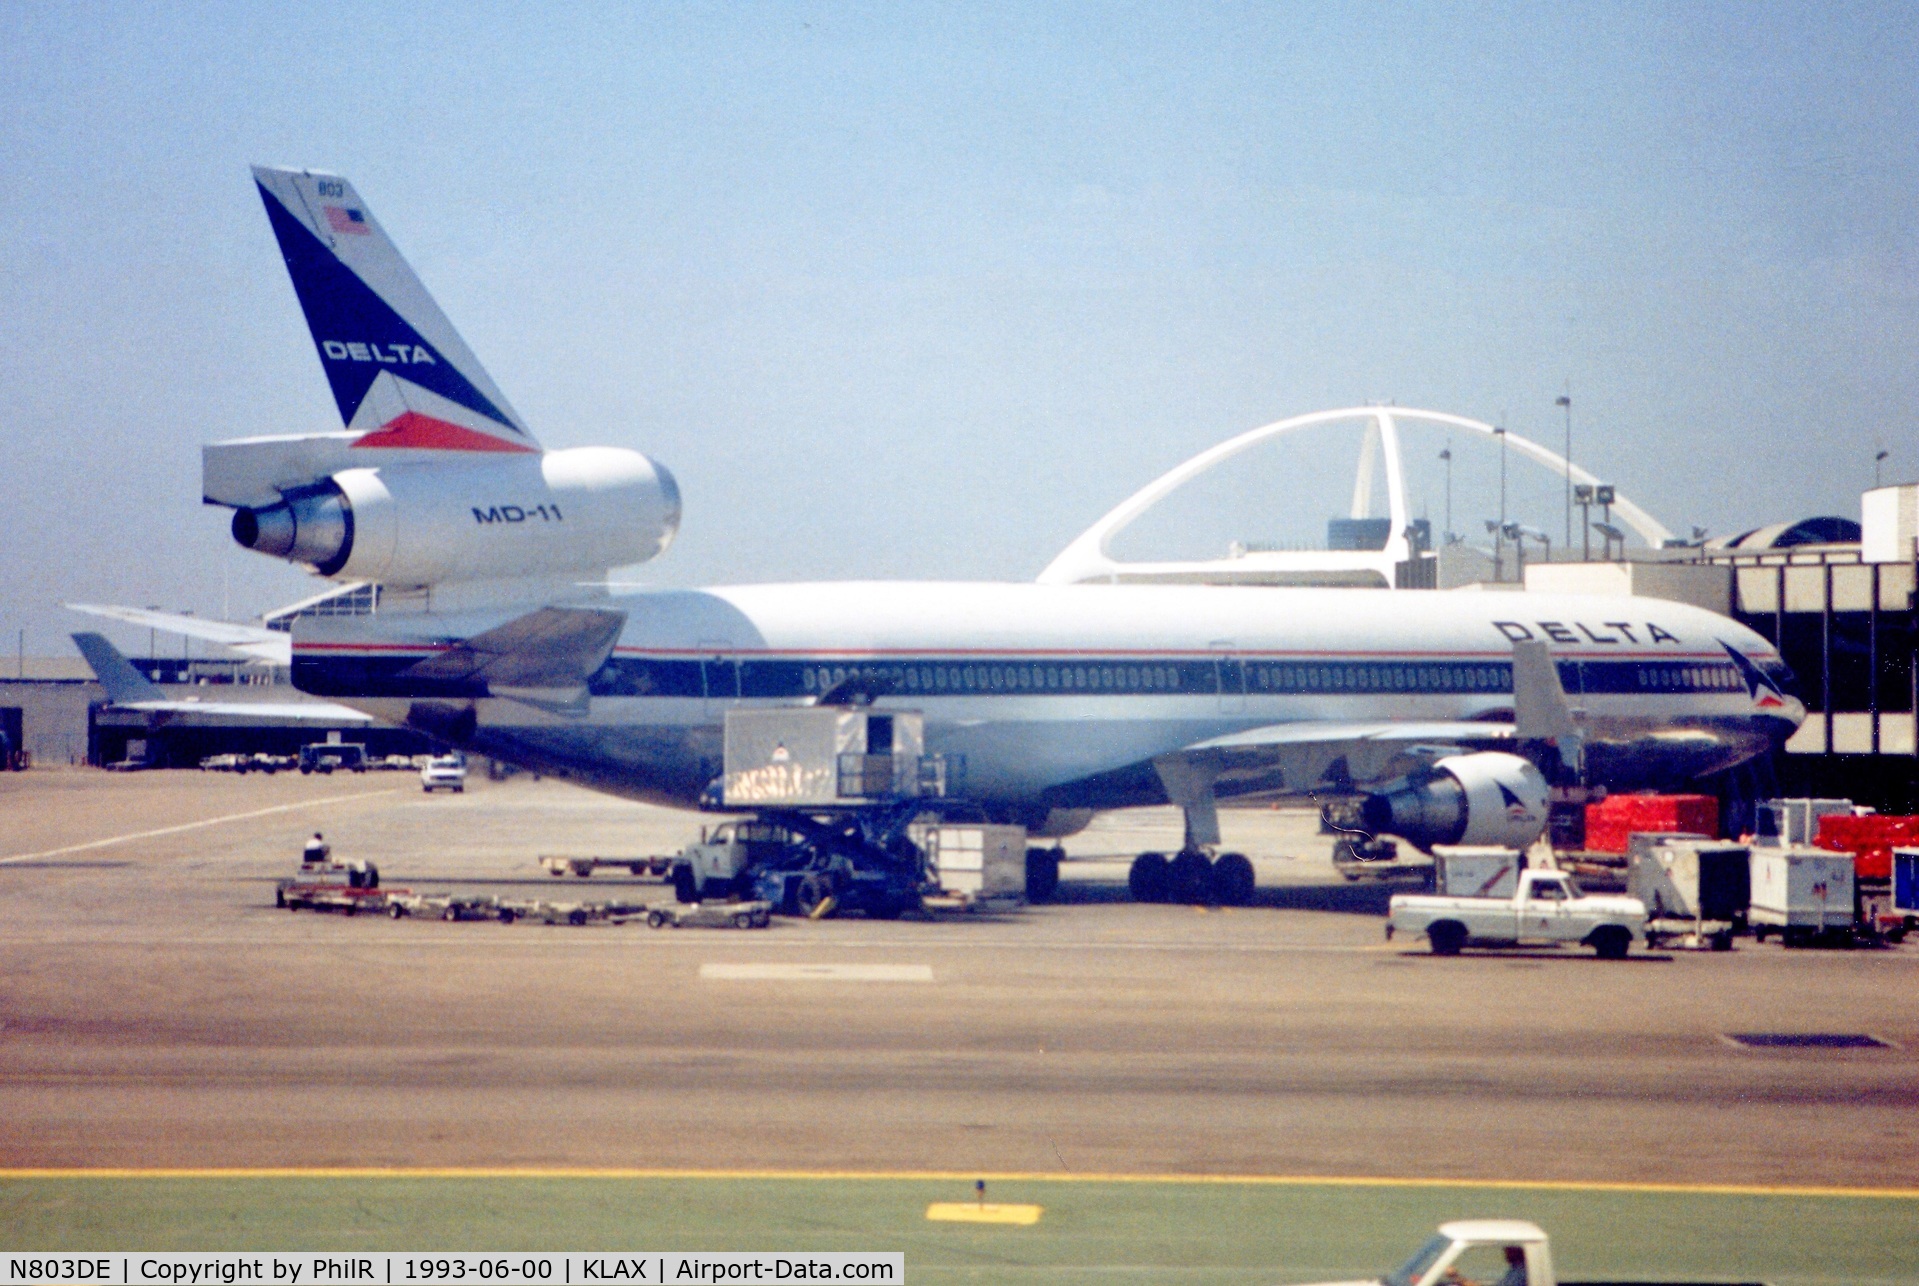 N803DE, 1991 McDonnell Douglas MD-11 C/N 48474, N803DE 1991 MD-11 Delta Airlines LAX